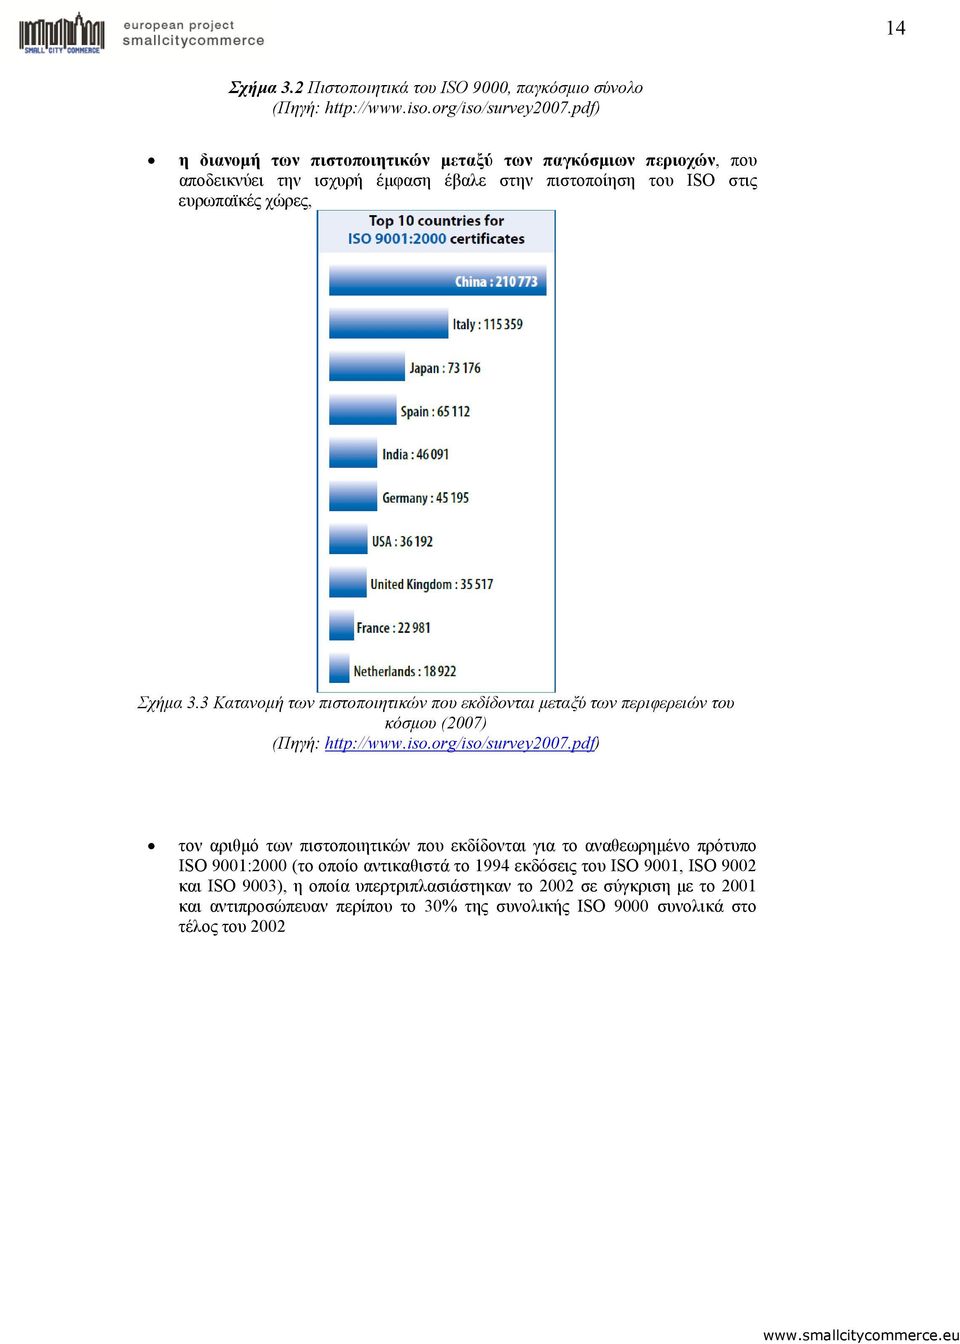 3 Κατανομή των πιστοποιητικών που εκδίδονται μεταξύ των περιφερειών του κόσμου (2007) (Πηγή: http://www.iso.org/iso/survey2007.